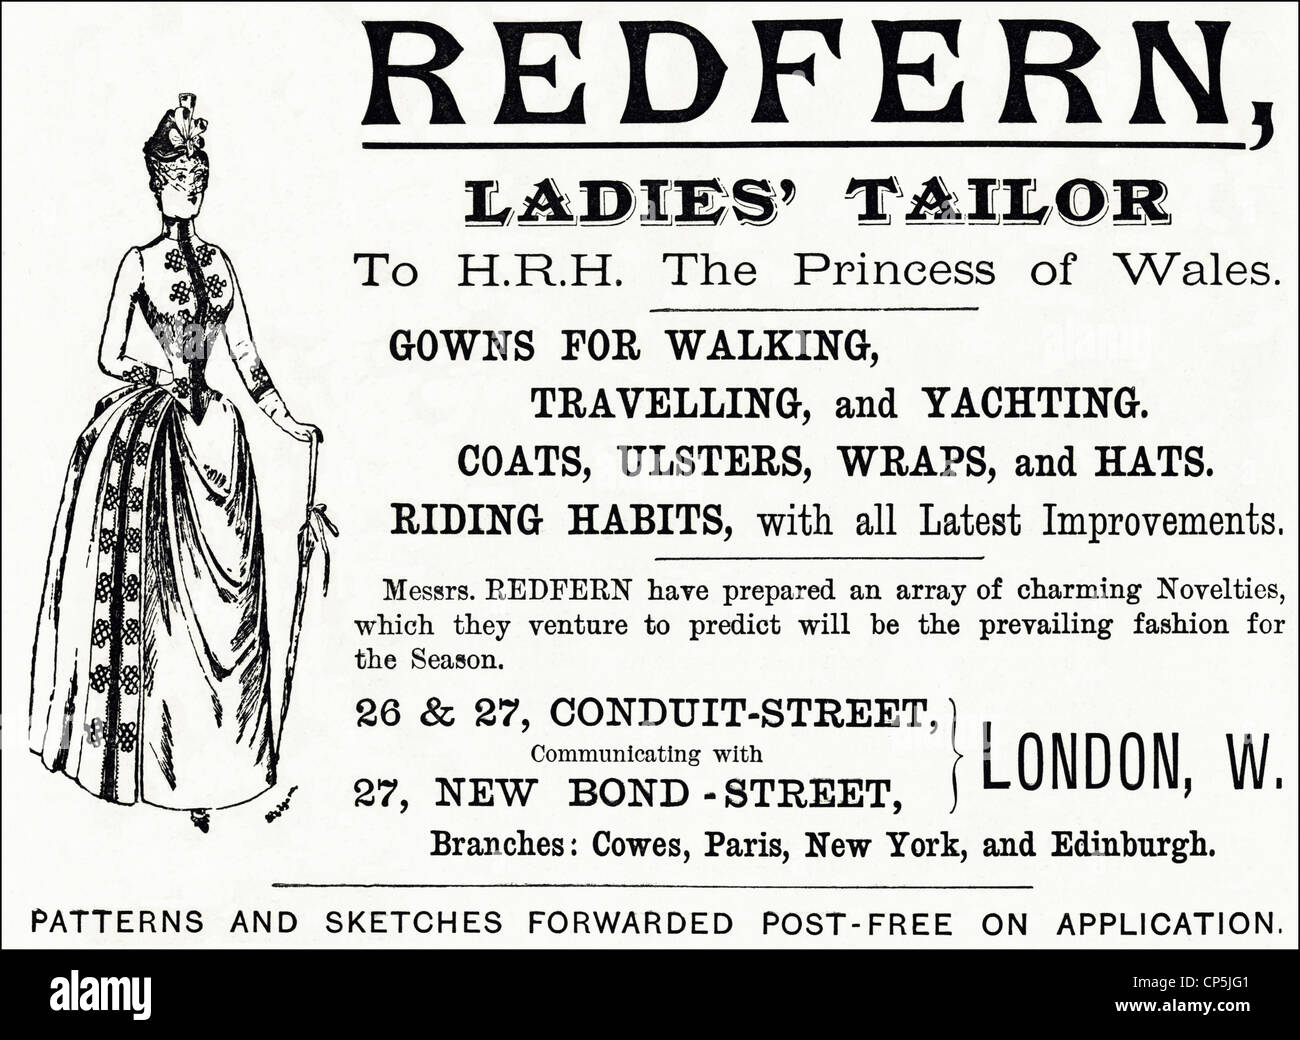 Vittoriana originale pubblicità pubblicità moda da signori sarto REDFERN dalla nomina a S.A.R. la Principessa di Galles. In data 13 giugno 1887. Foto Stock